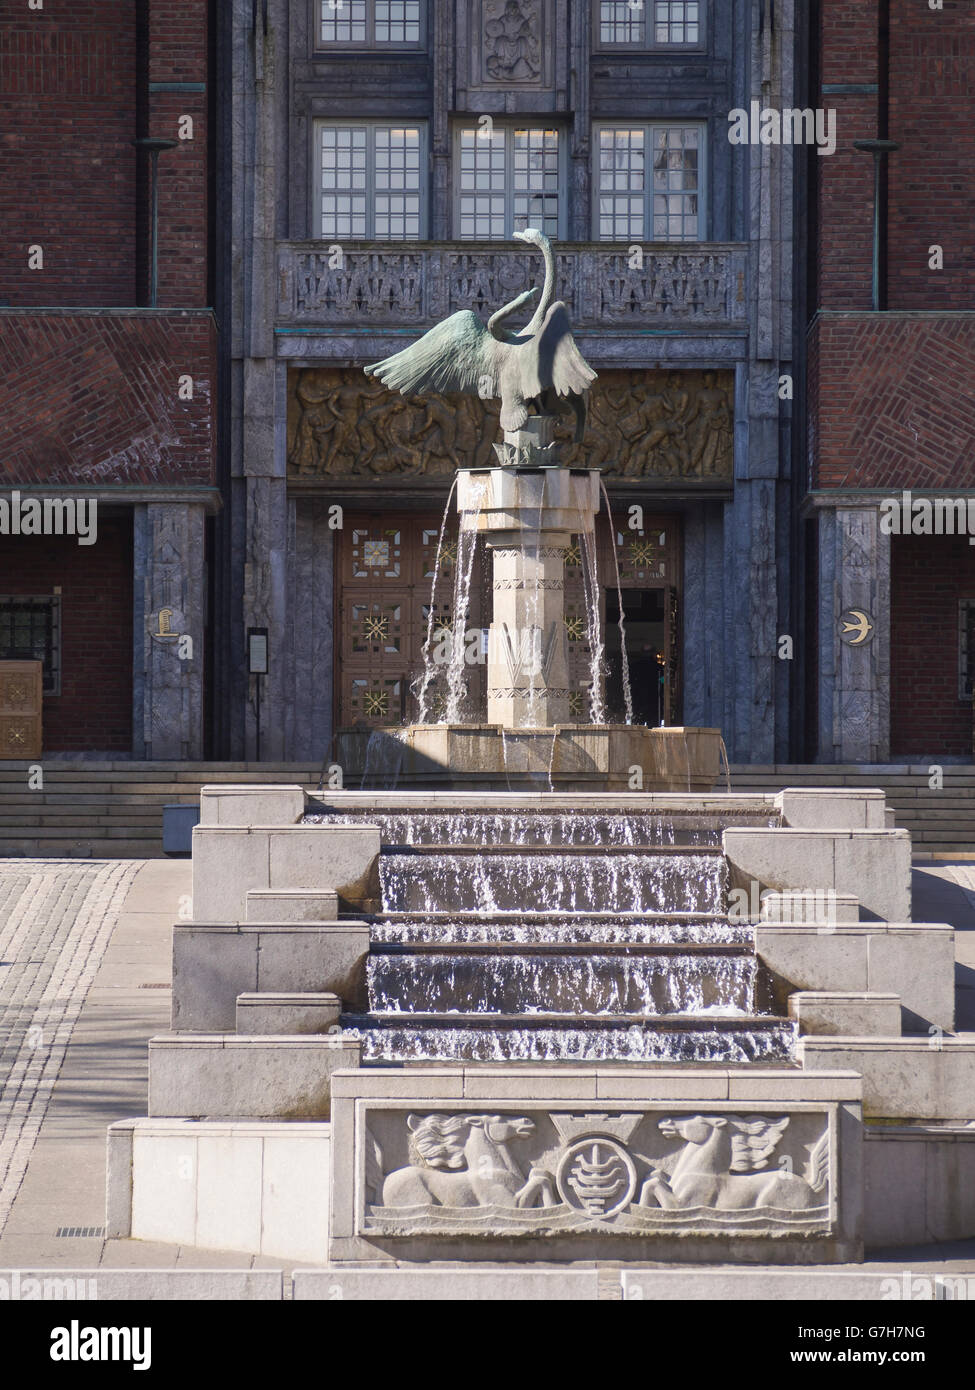 Il municipio di Oslo cortile con fontana del cigno dalla scultore norvegese Dyre Vaa Foto Stock